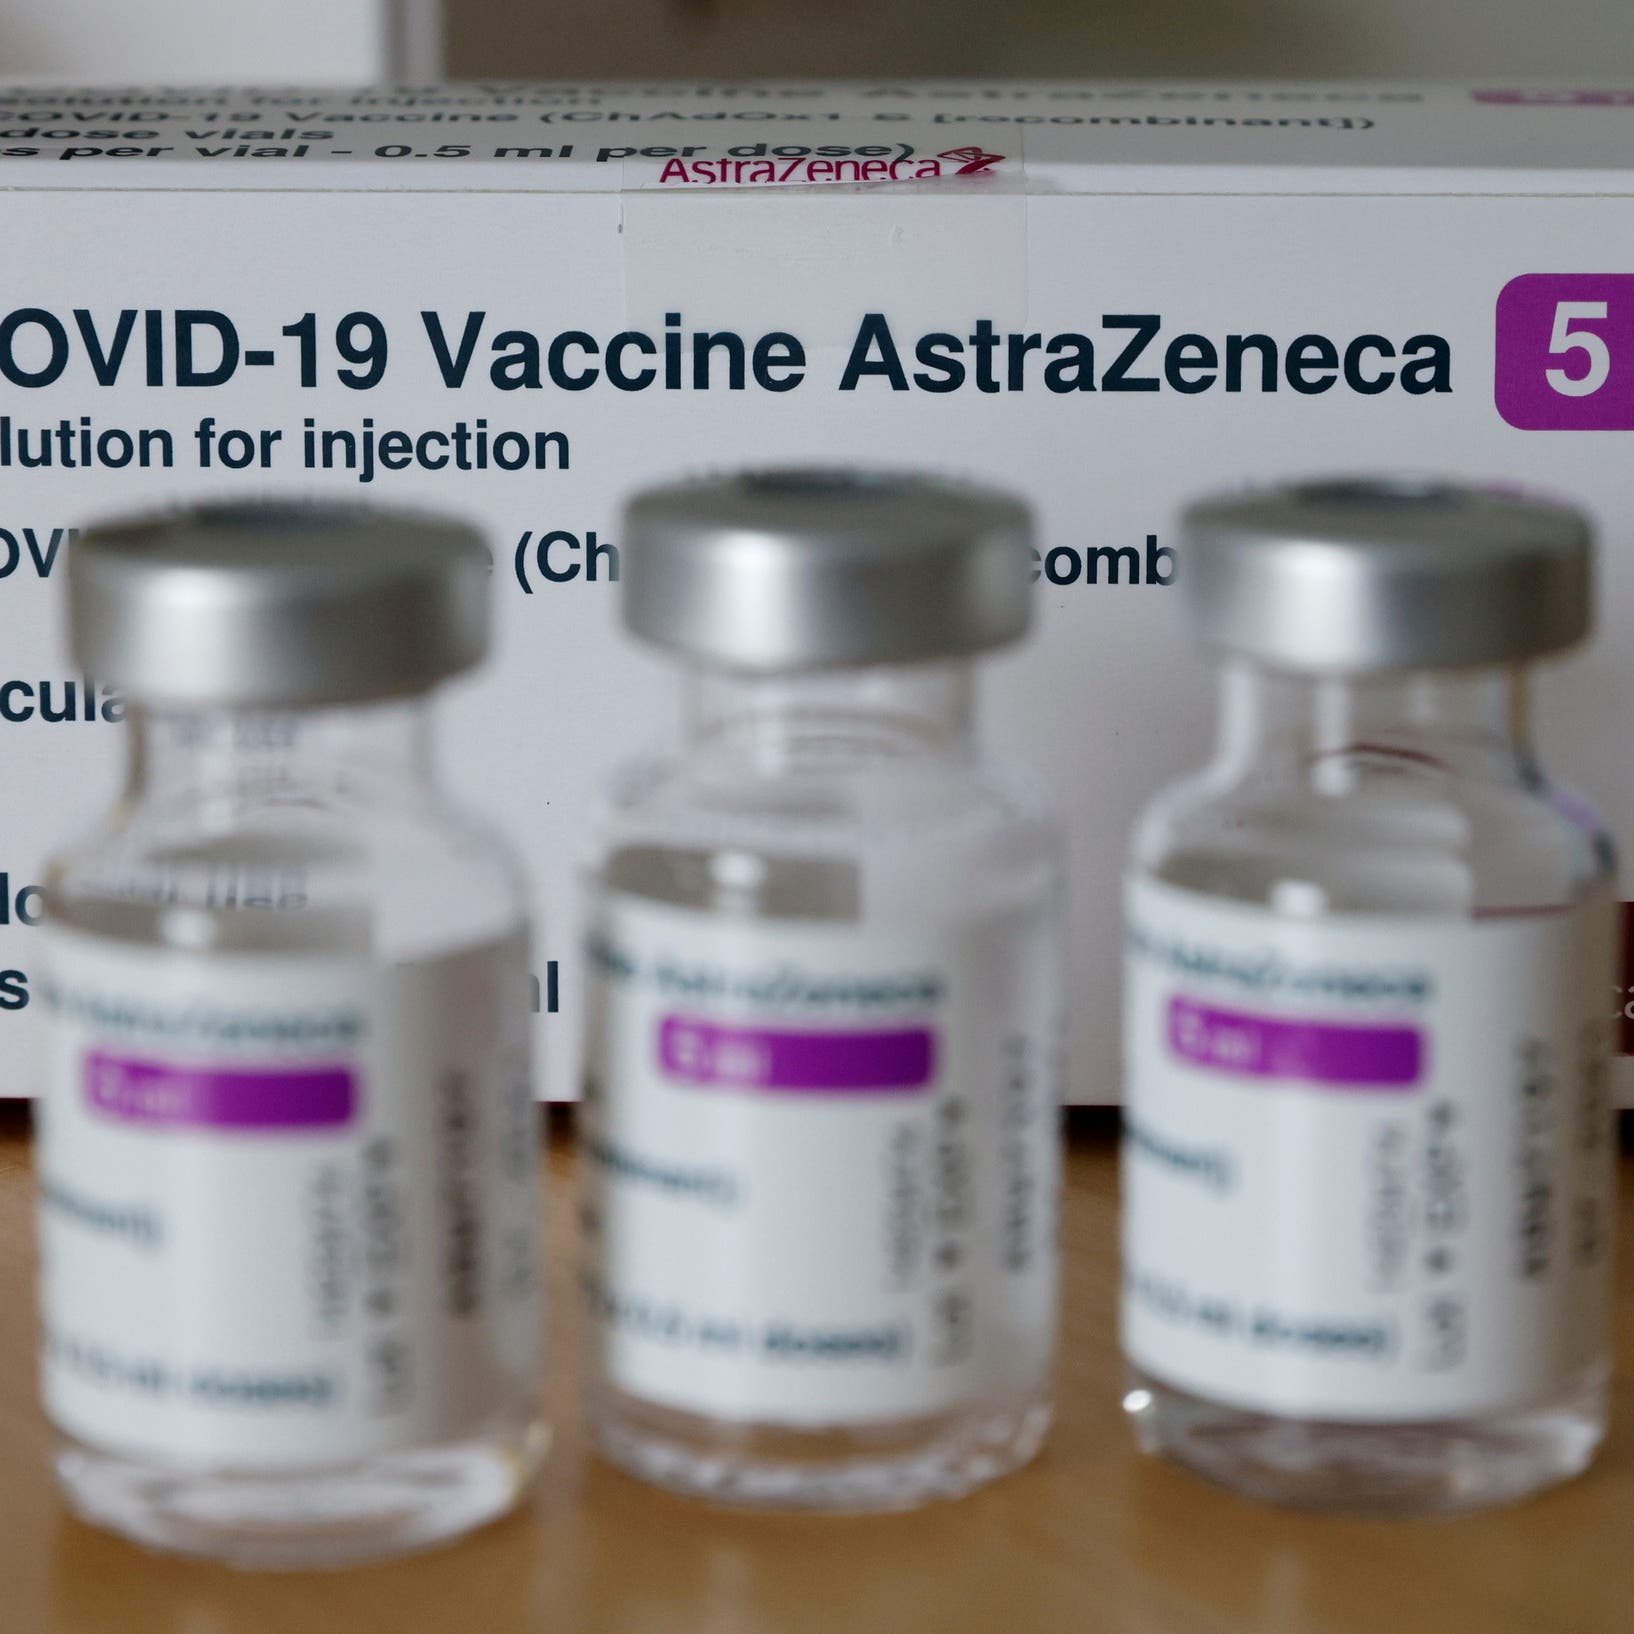 Egypt receives new batch of AstraZeneca COVID-19 vaccine via COVAX